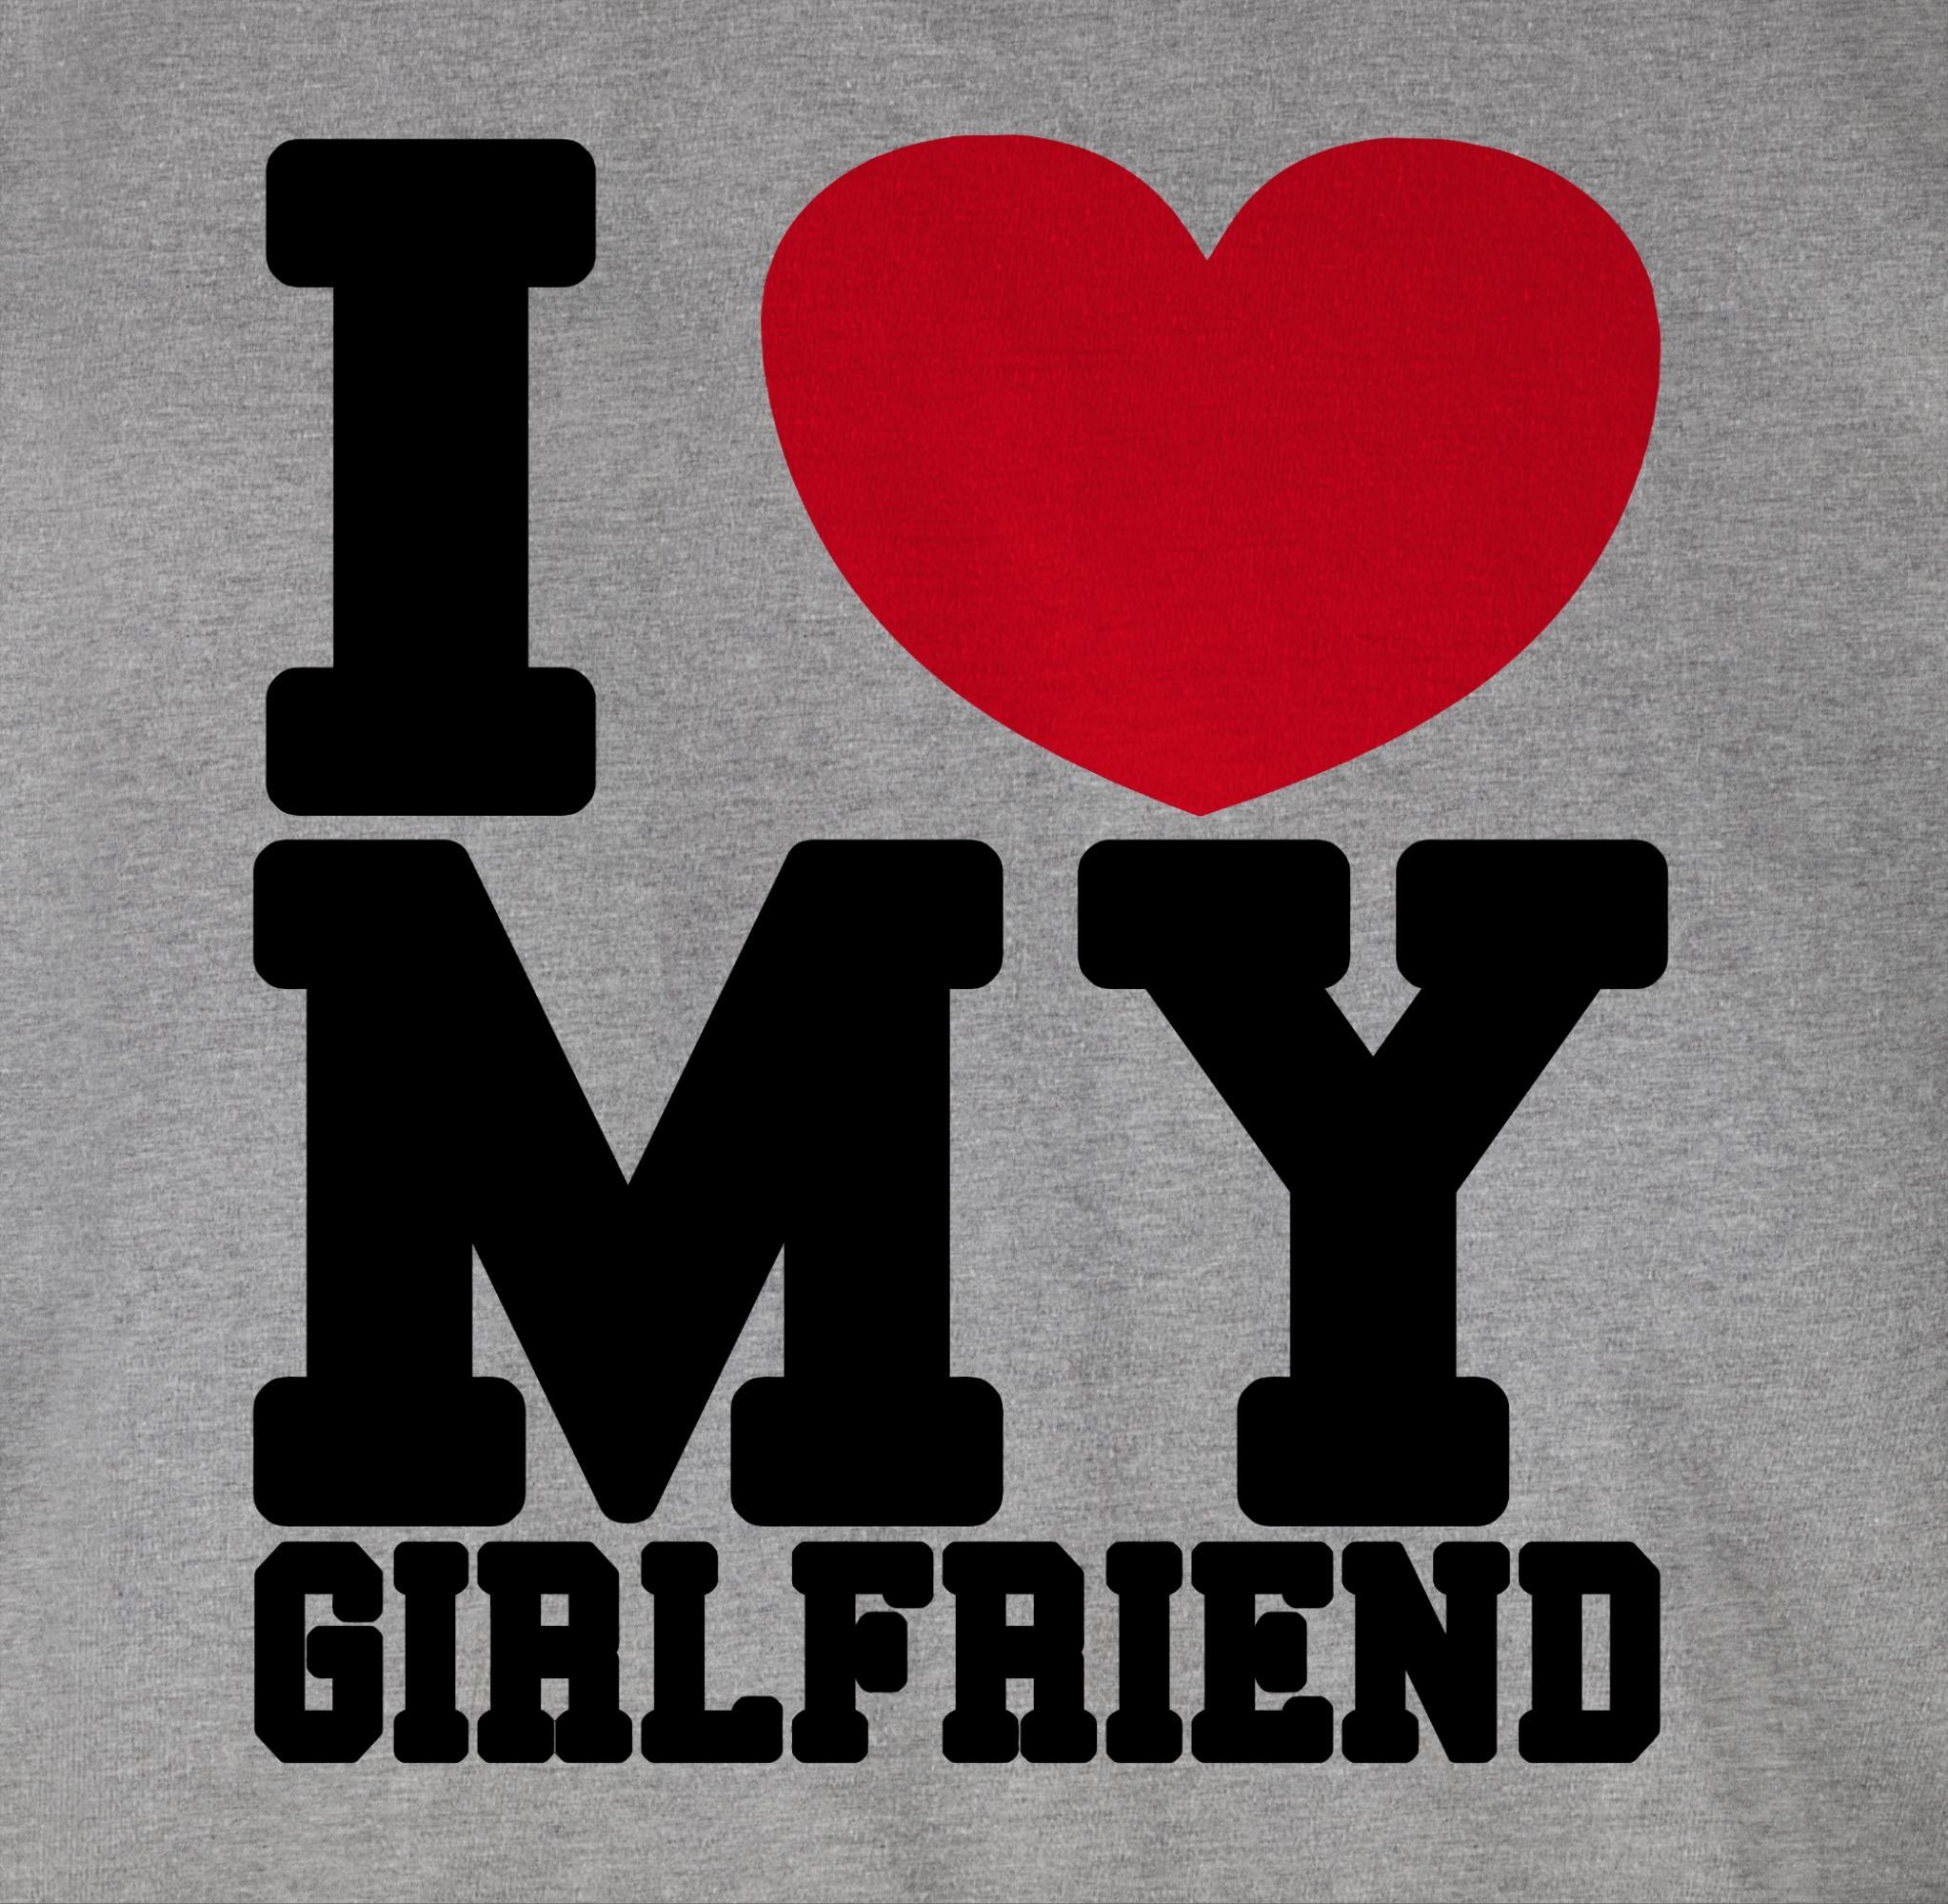 Shirtracer T-Shirt I GF meliert my Geschenk my Partner 2 - love meine Freundin Grau Valentinstag Liebe Love Girlfriend liebe Ich